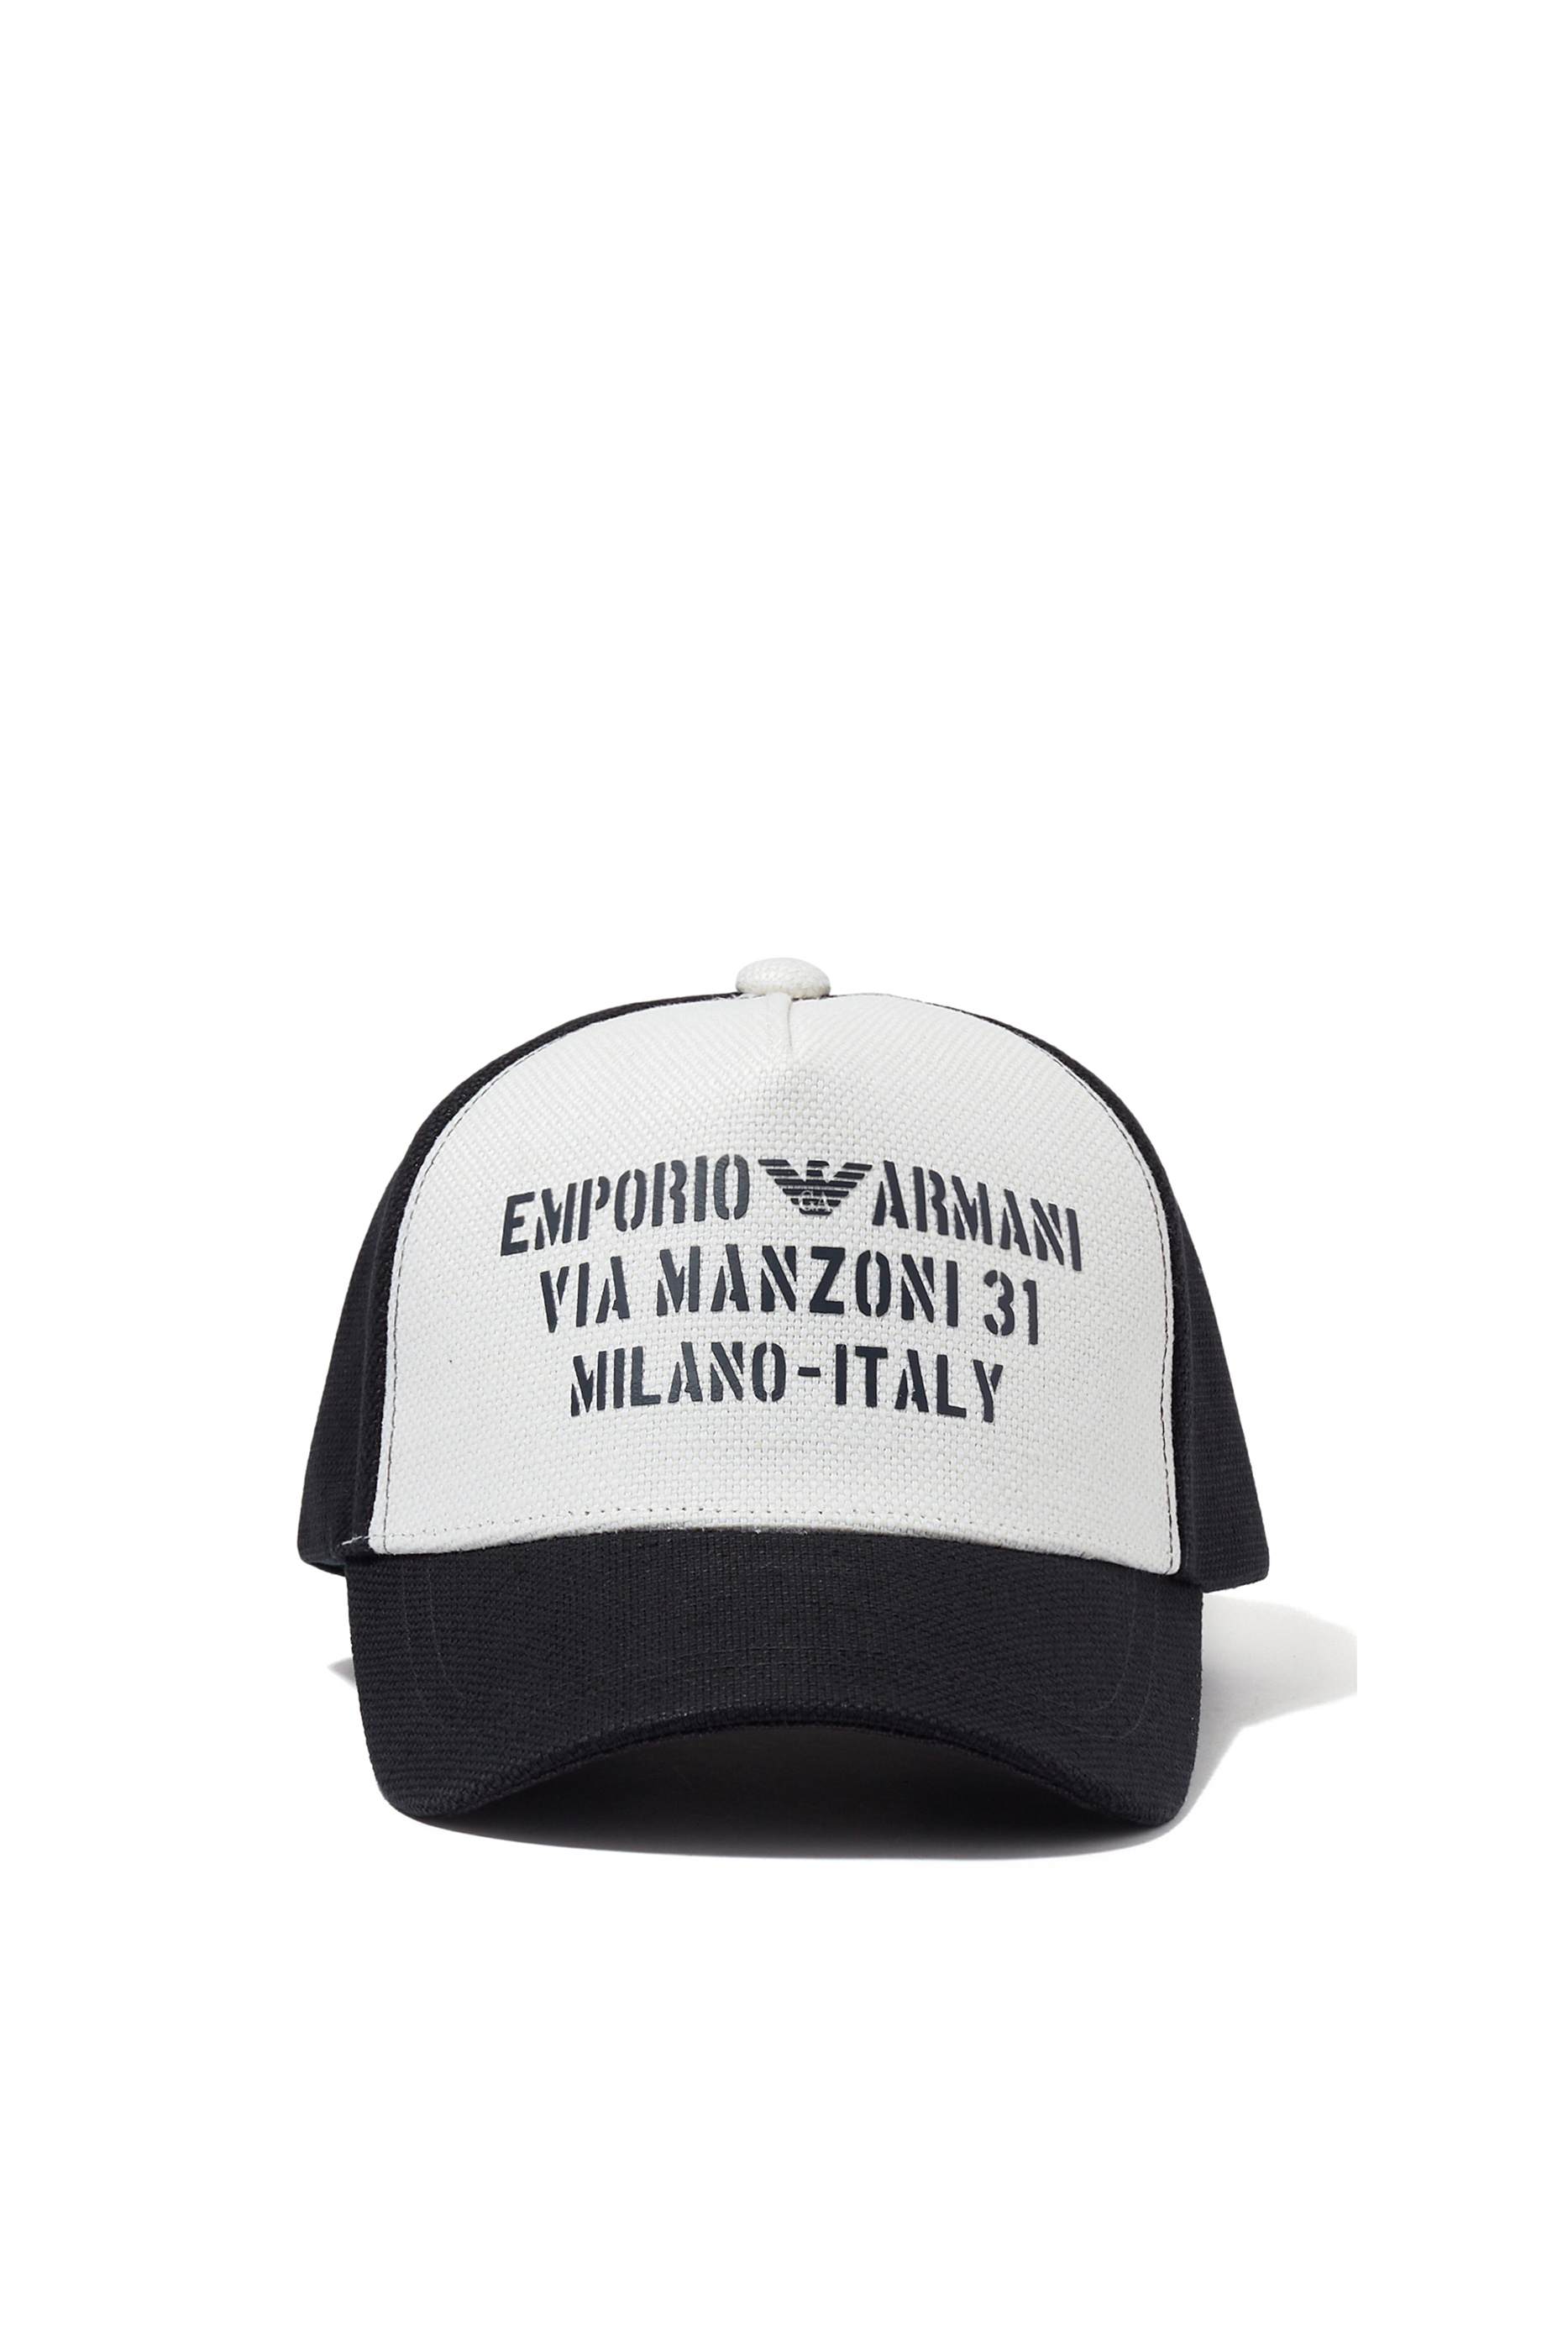 Buy Emporio Armani Via Manzoni 31 Baseball Hat for Mens | Bloomingdale ...